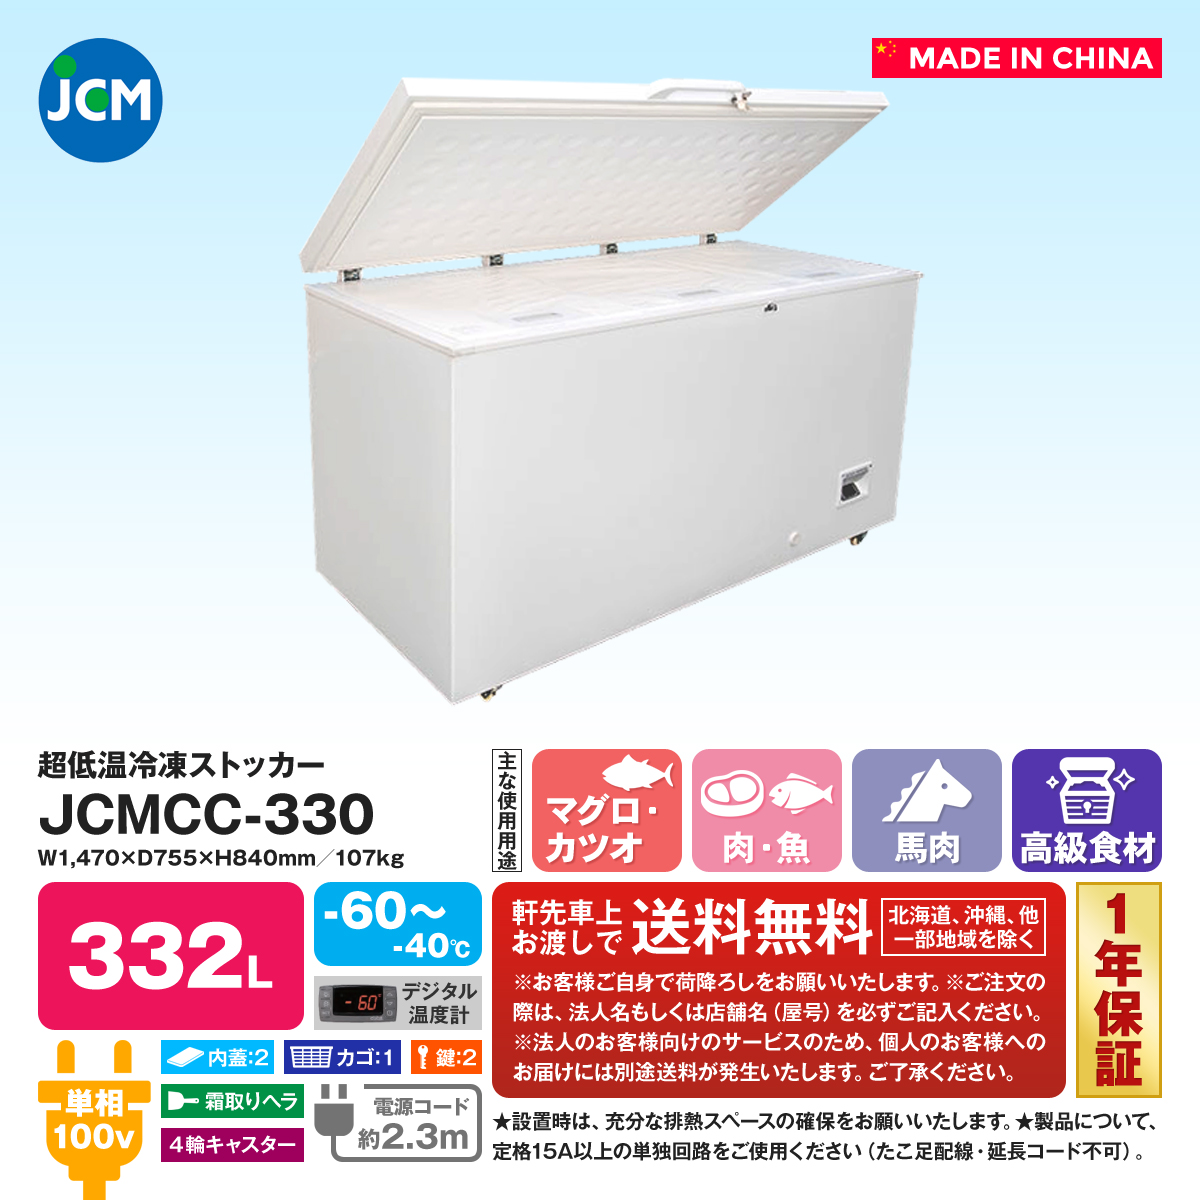 専門店では 超低温冷凍ストッカー JCMCC-330 未使用品